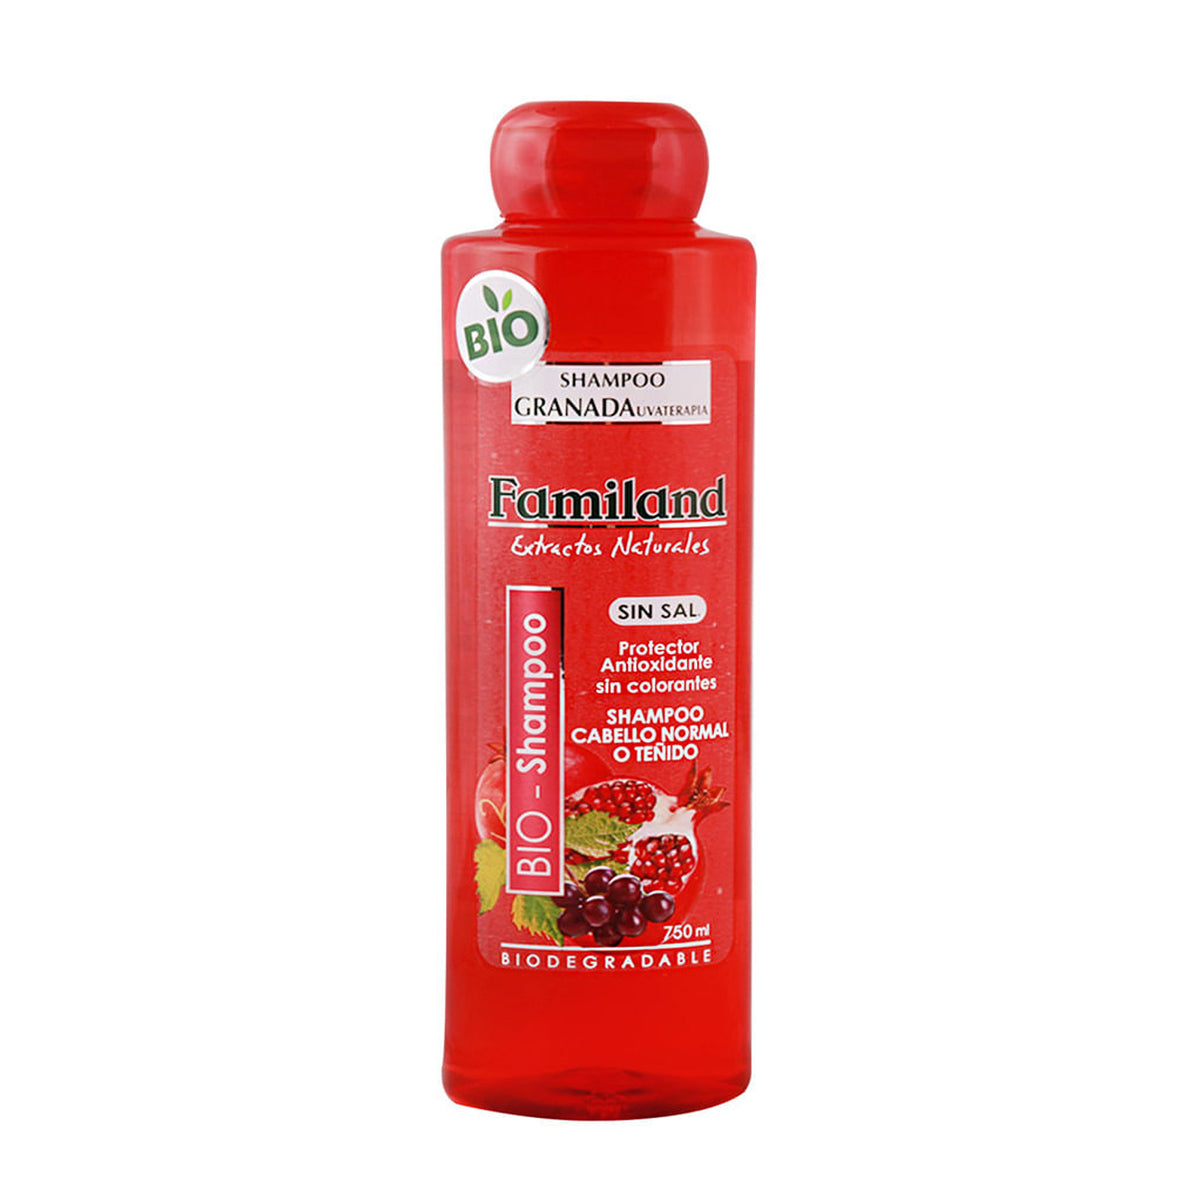 Familand Shampoo Granada